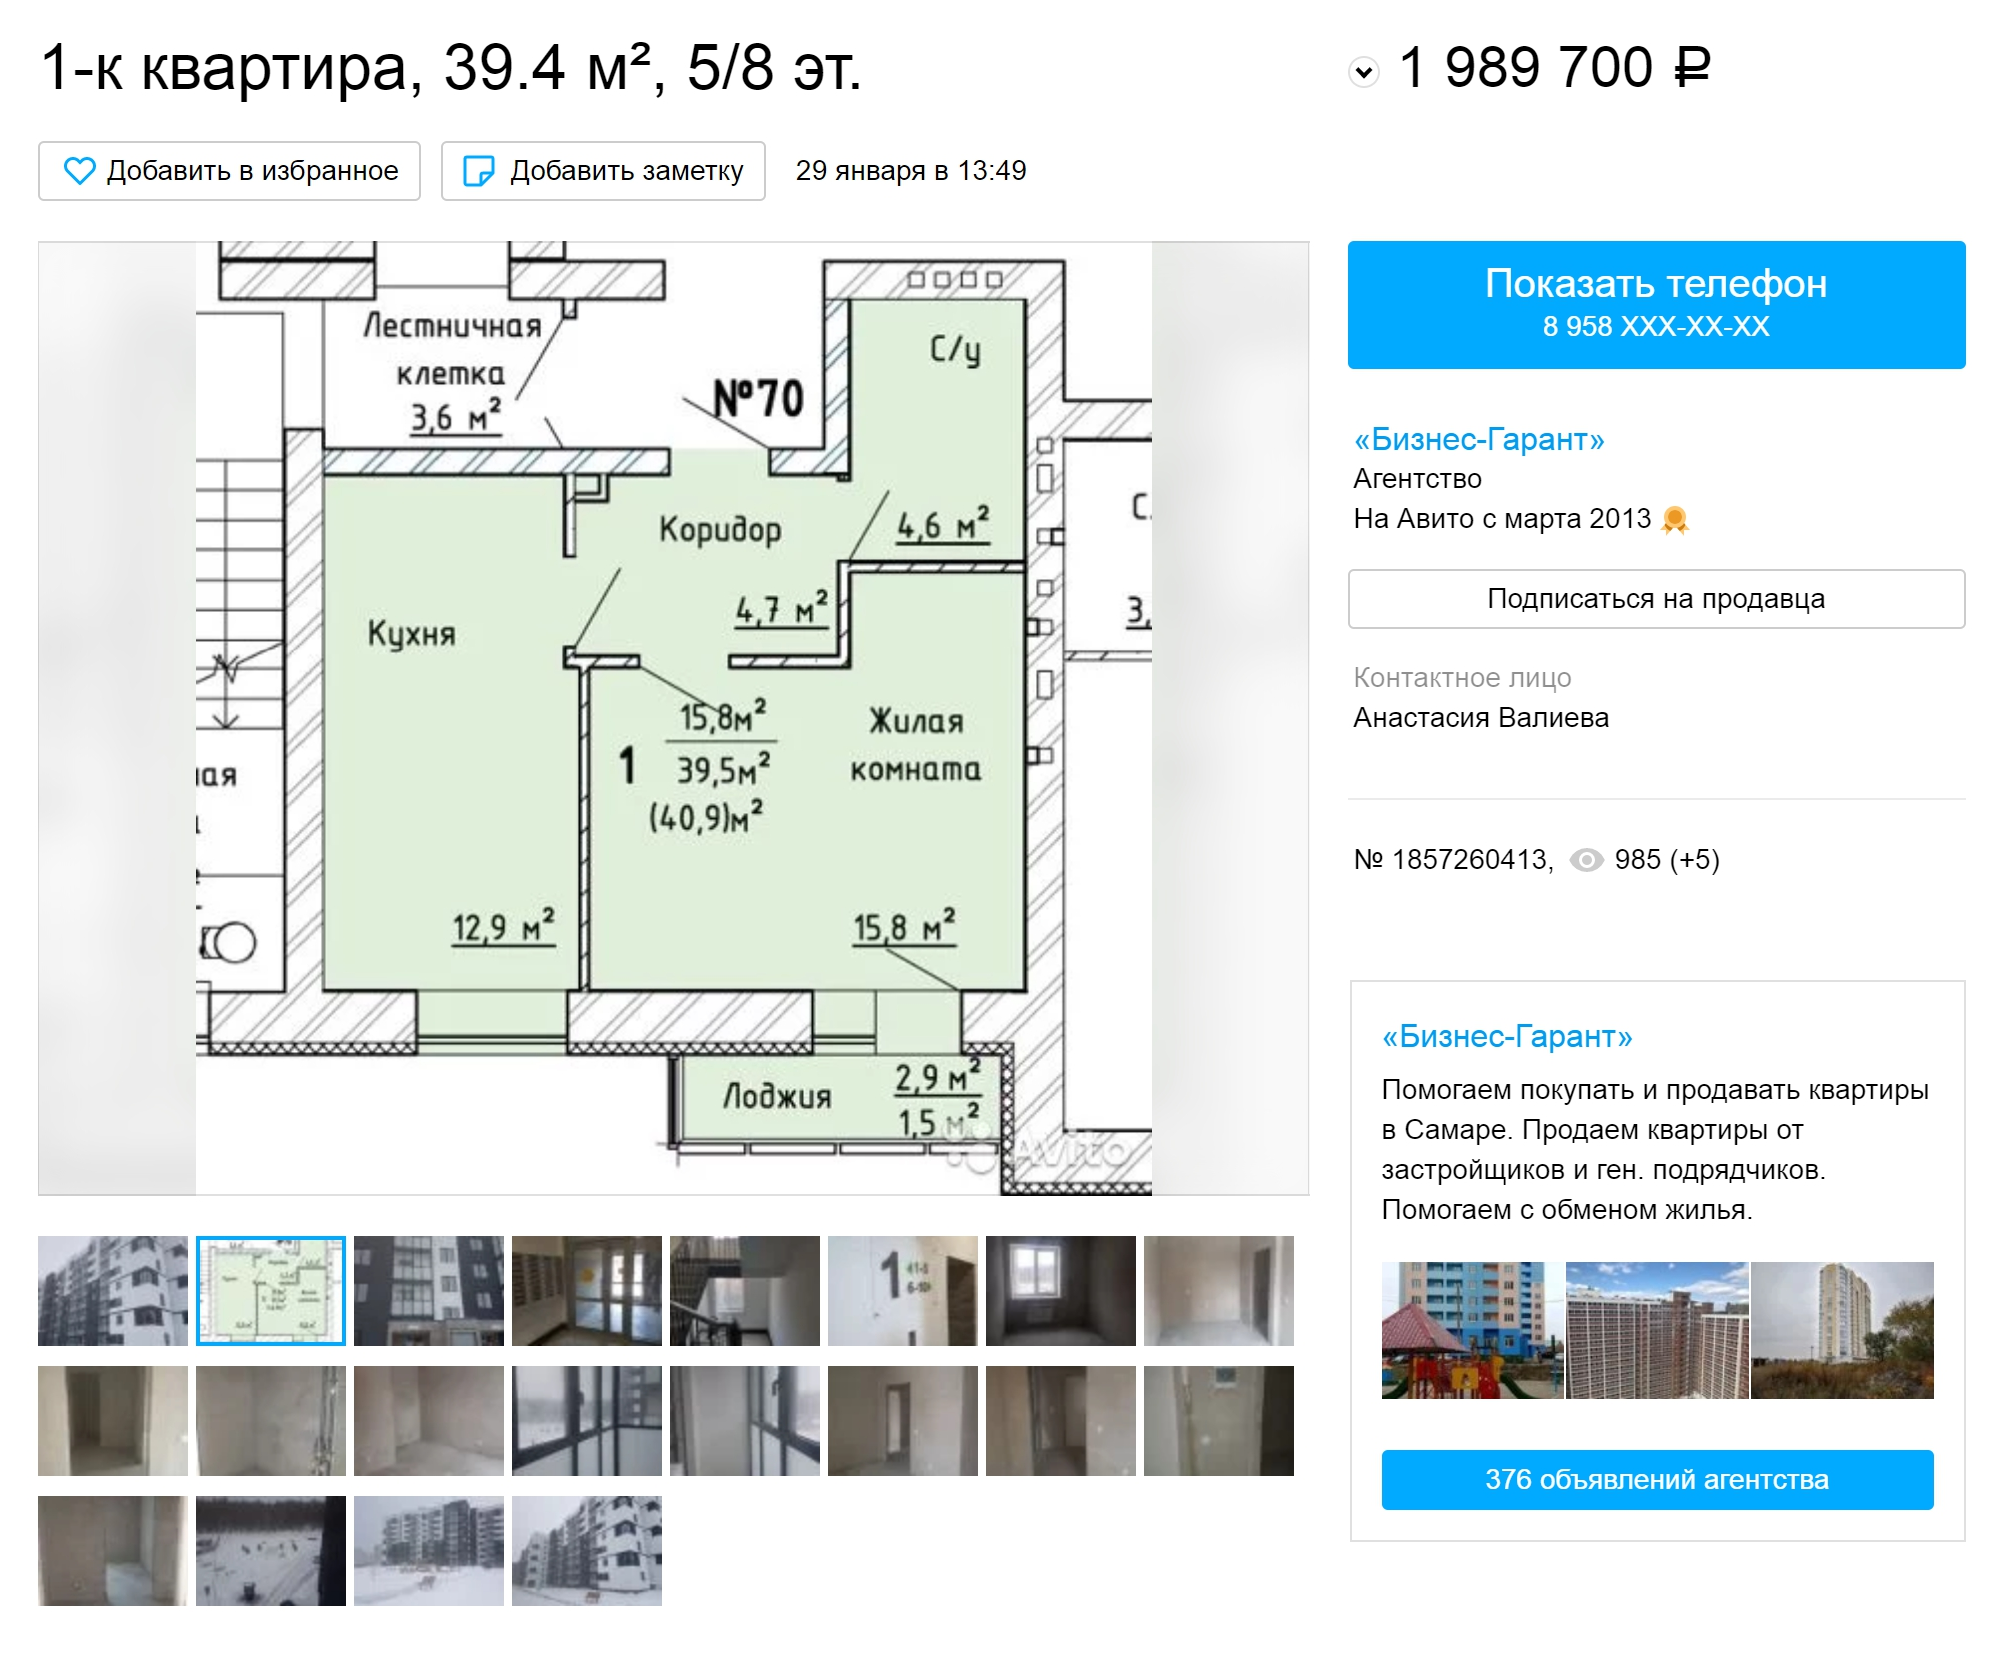 Однокомнатная квартира в строящемся доме в ЖК «Гринвуд» площадью чуть больше моей стоит почти 2 млн